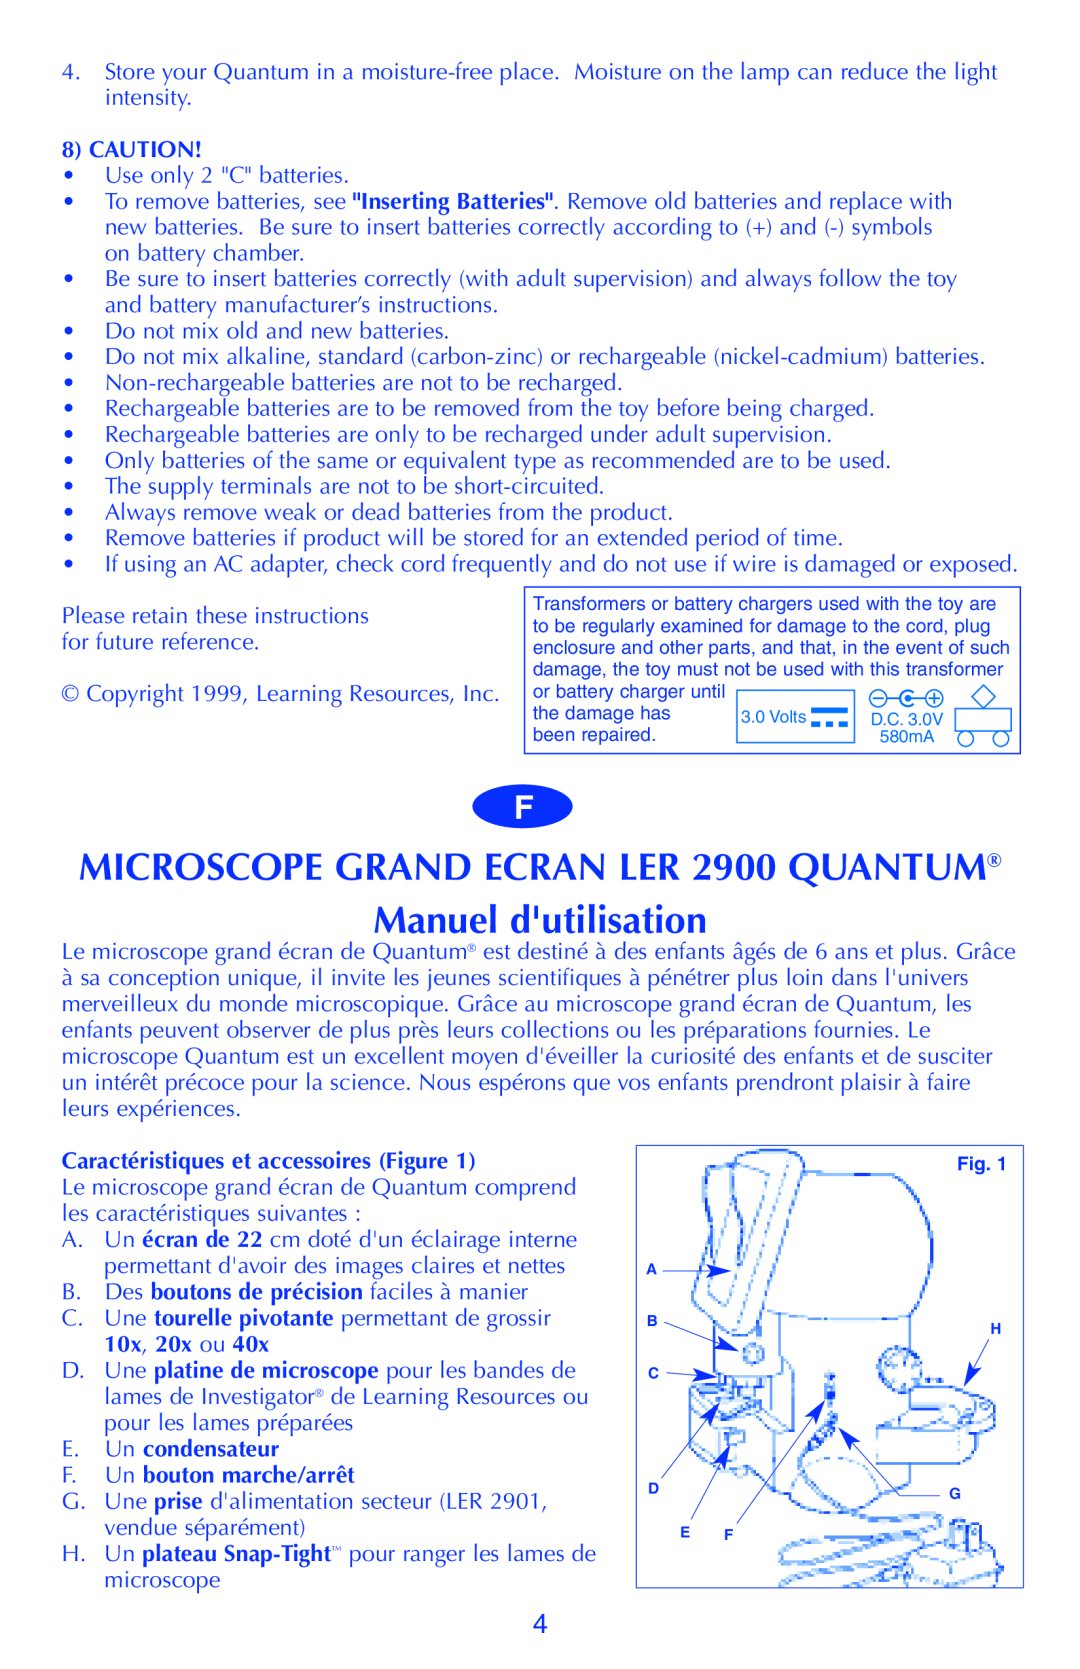 Quantum MICROSCOPE GRAND ECRAN LER 2900 QUANTUM Manuel dutilisation, Caution, Caractéristiques et accessoires Figure 